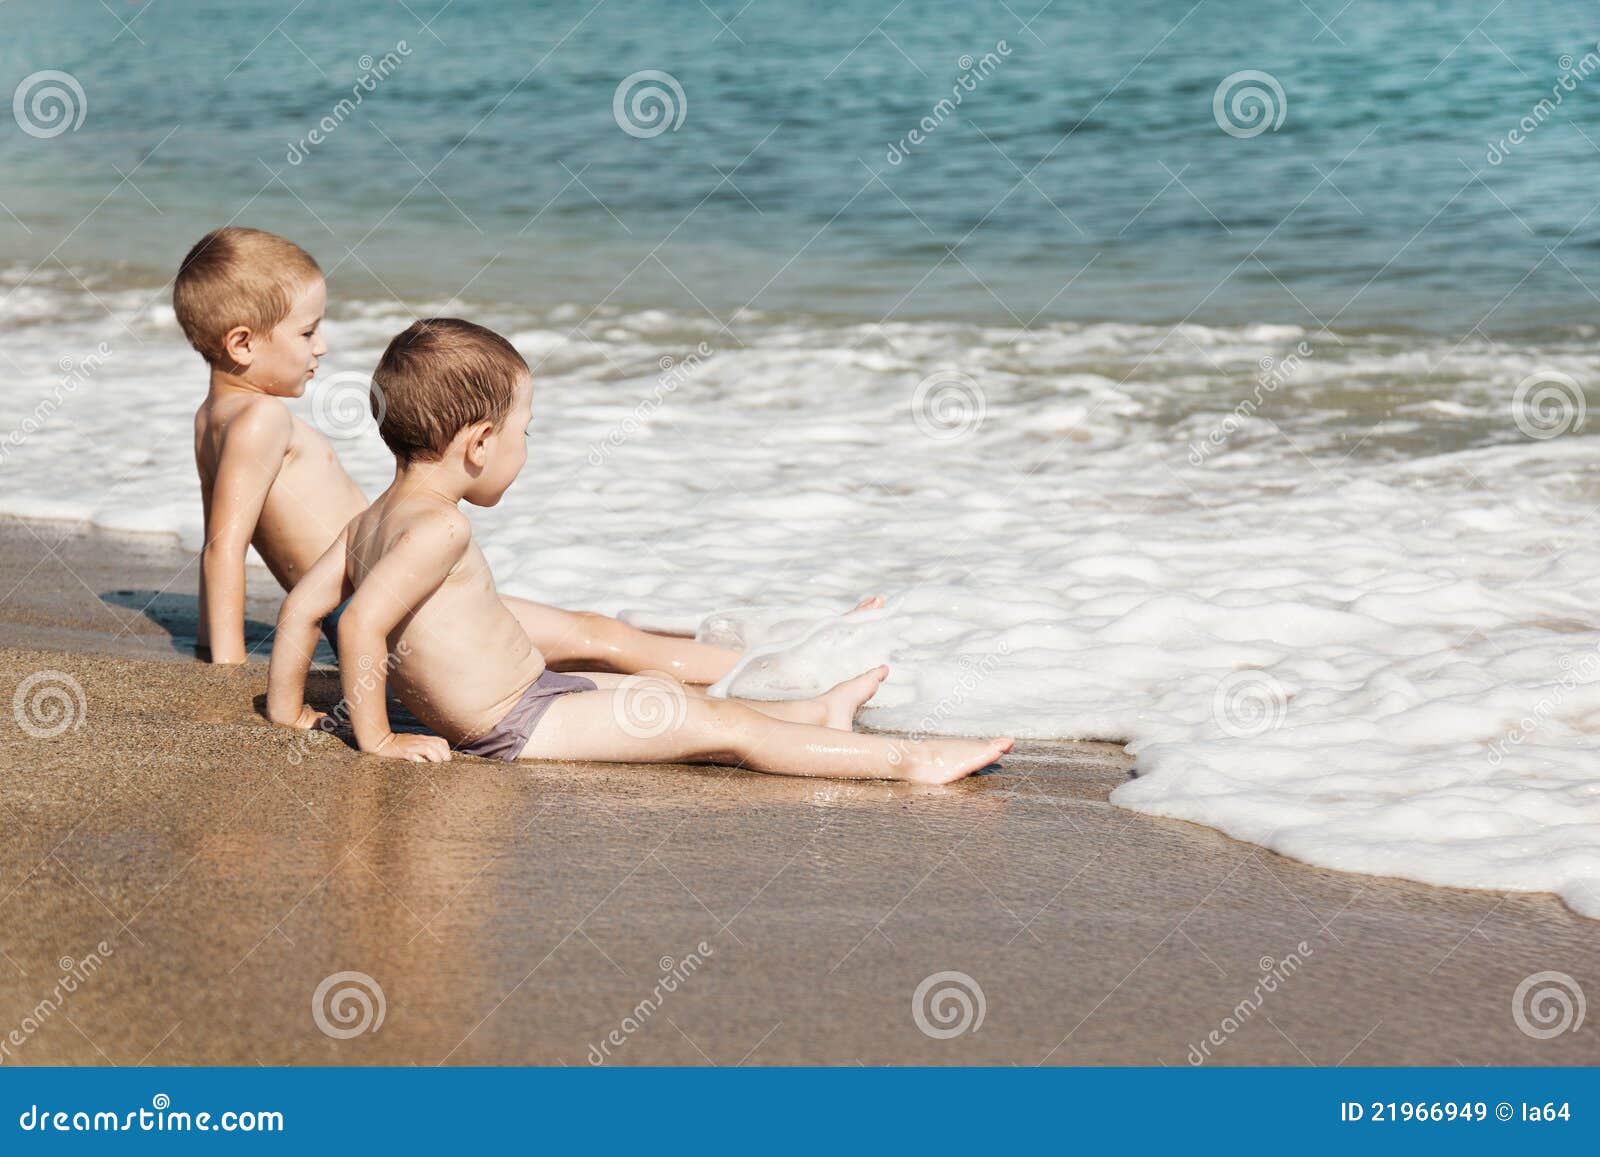 нудистский пляж с голыми детьми фото 86